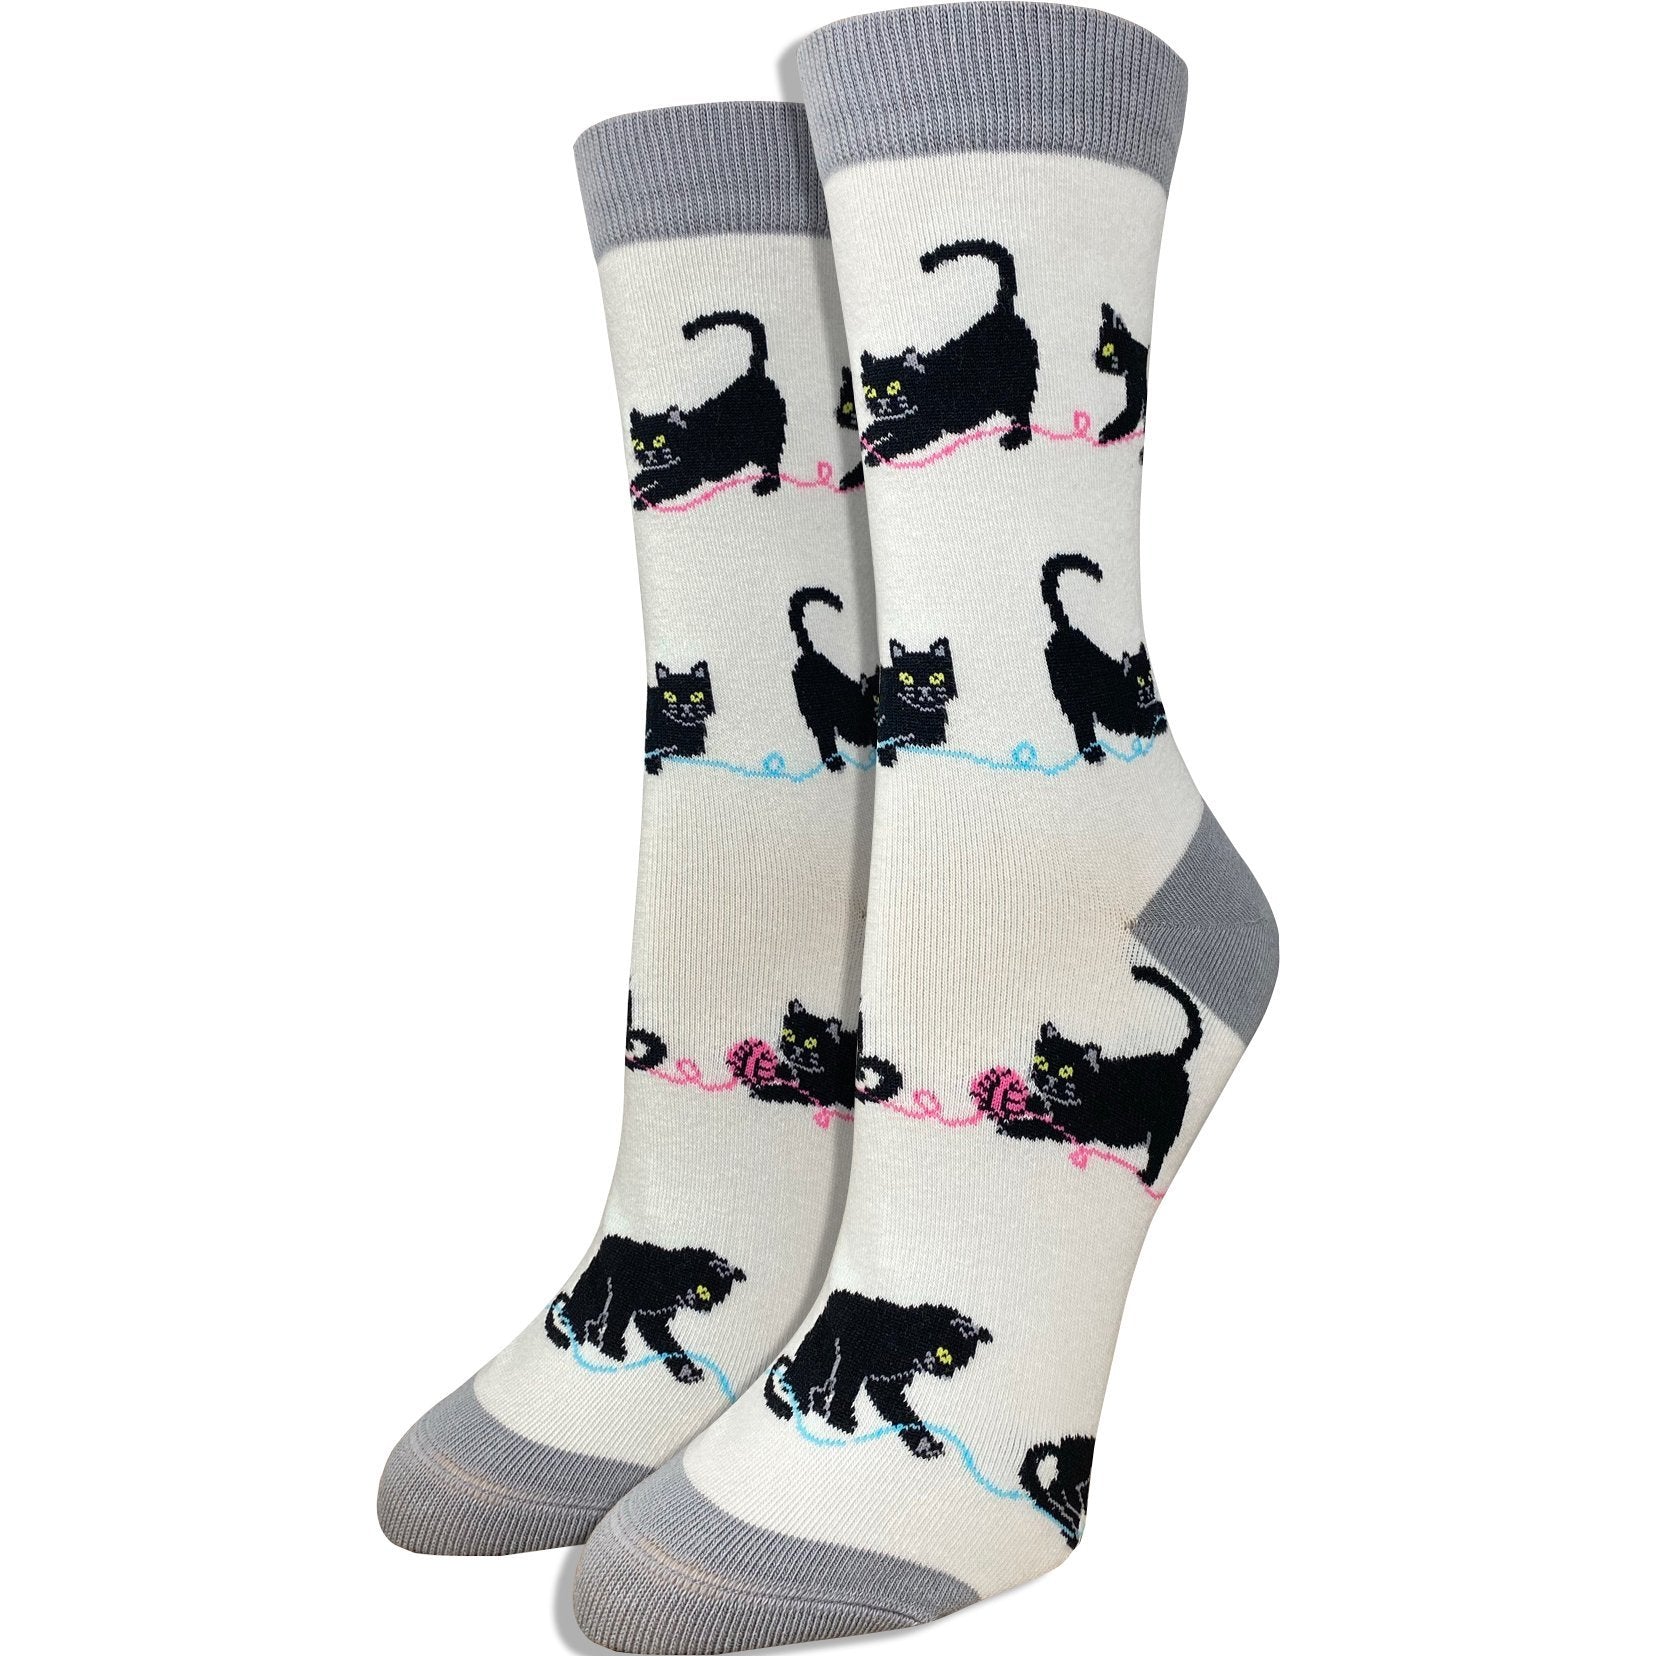 Women's Black Cat Socks – Imagery Socks